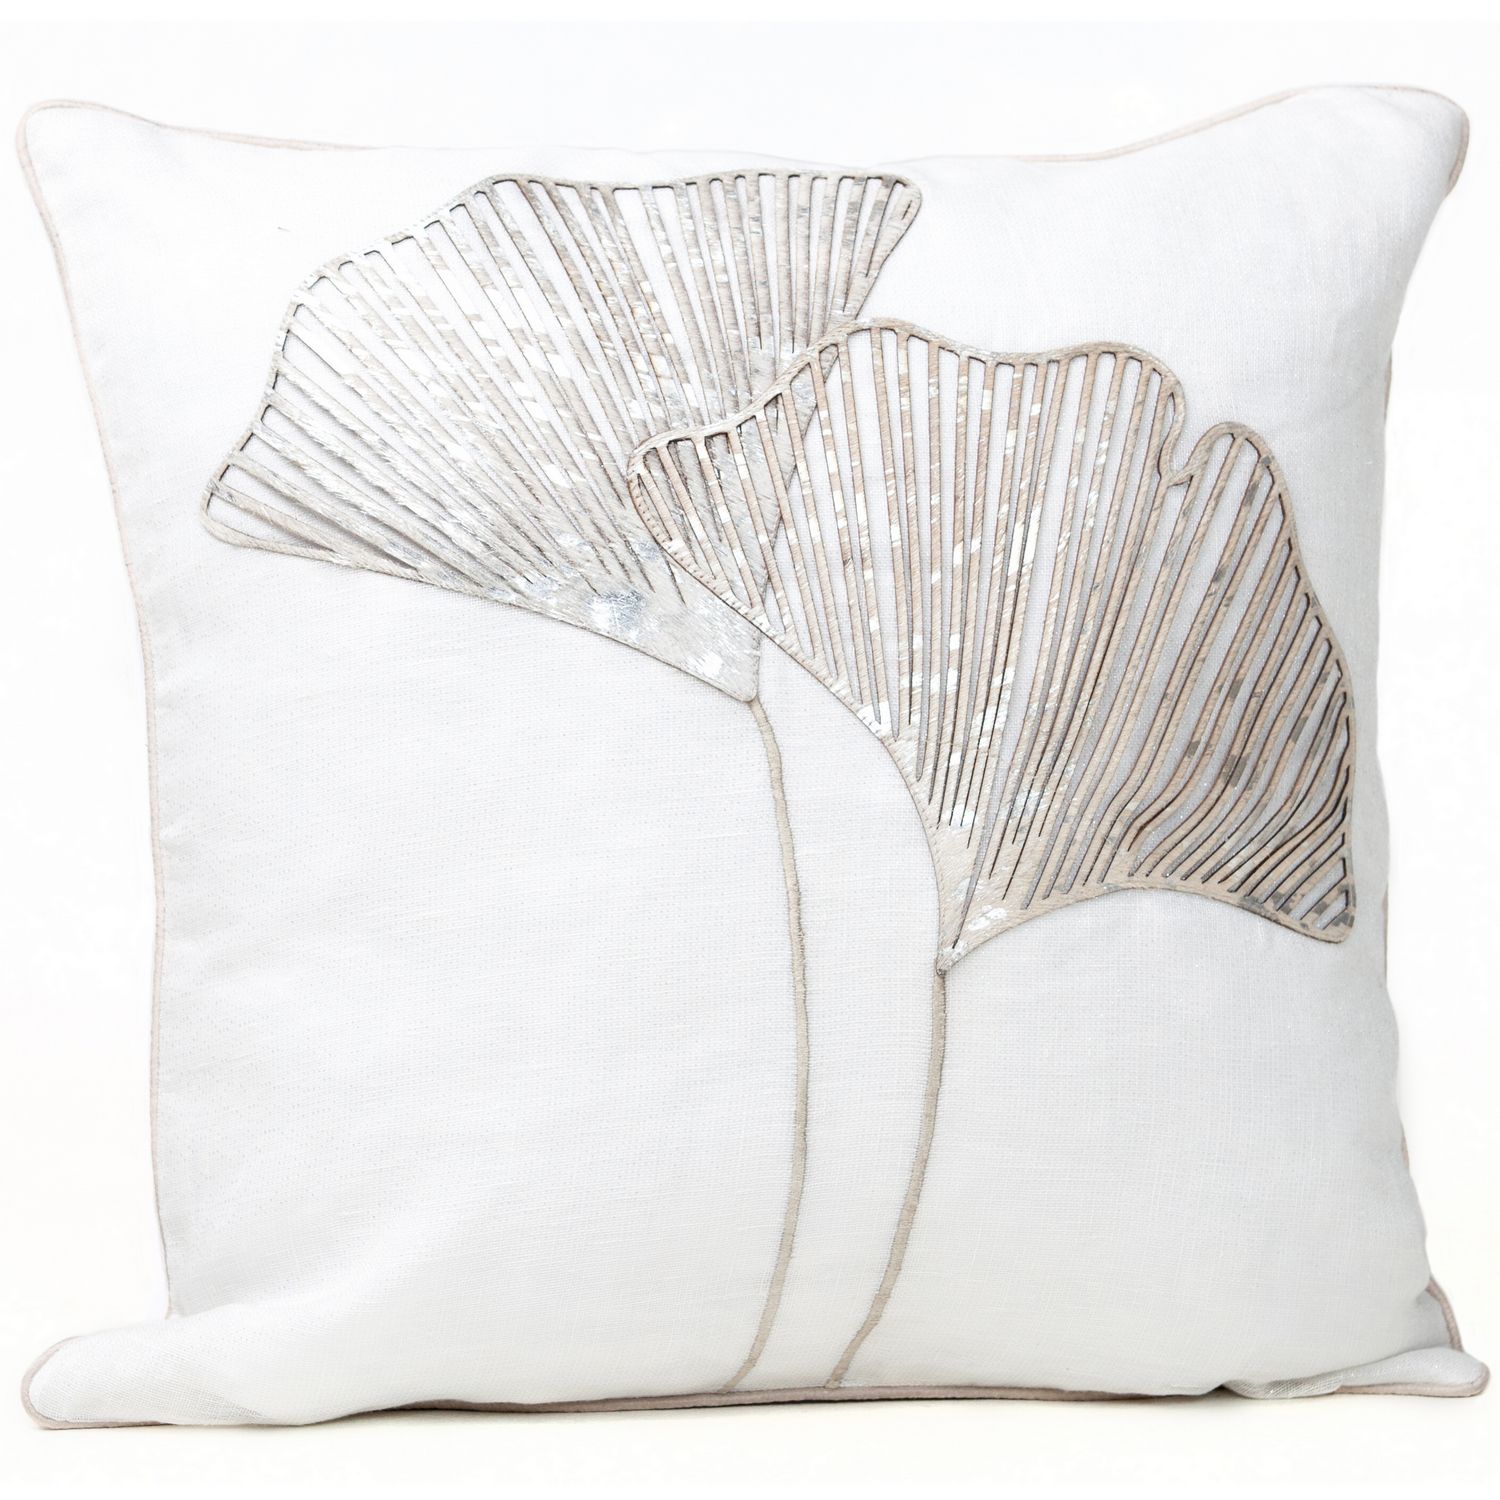 Fibre by Auskin Laser Cut Cowhide Decorative Pillows